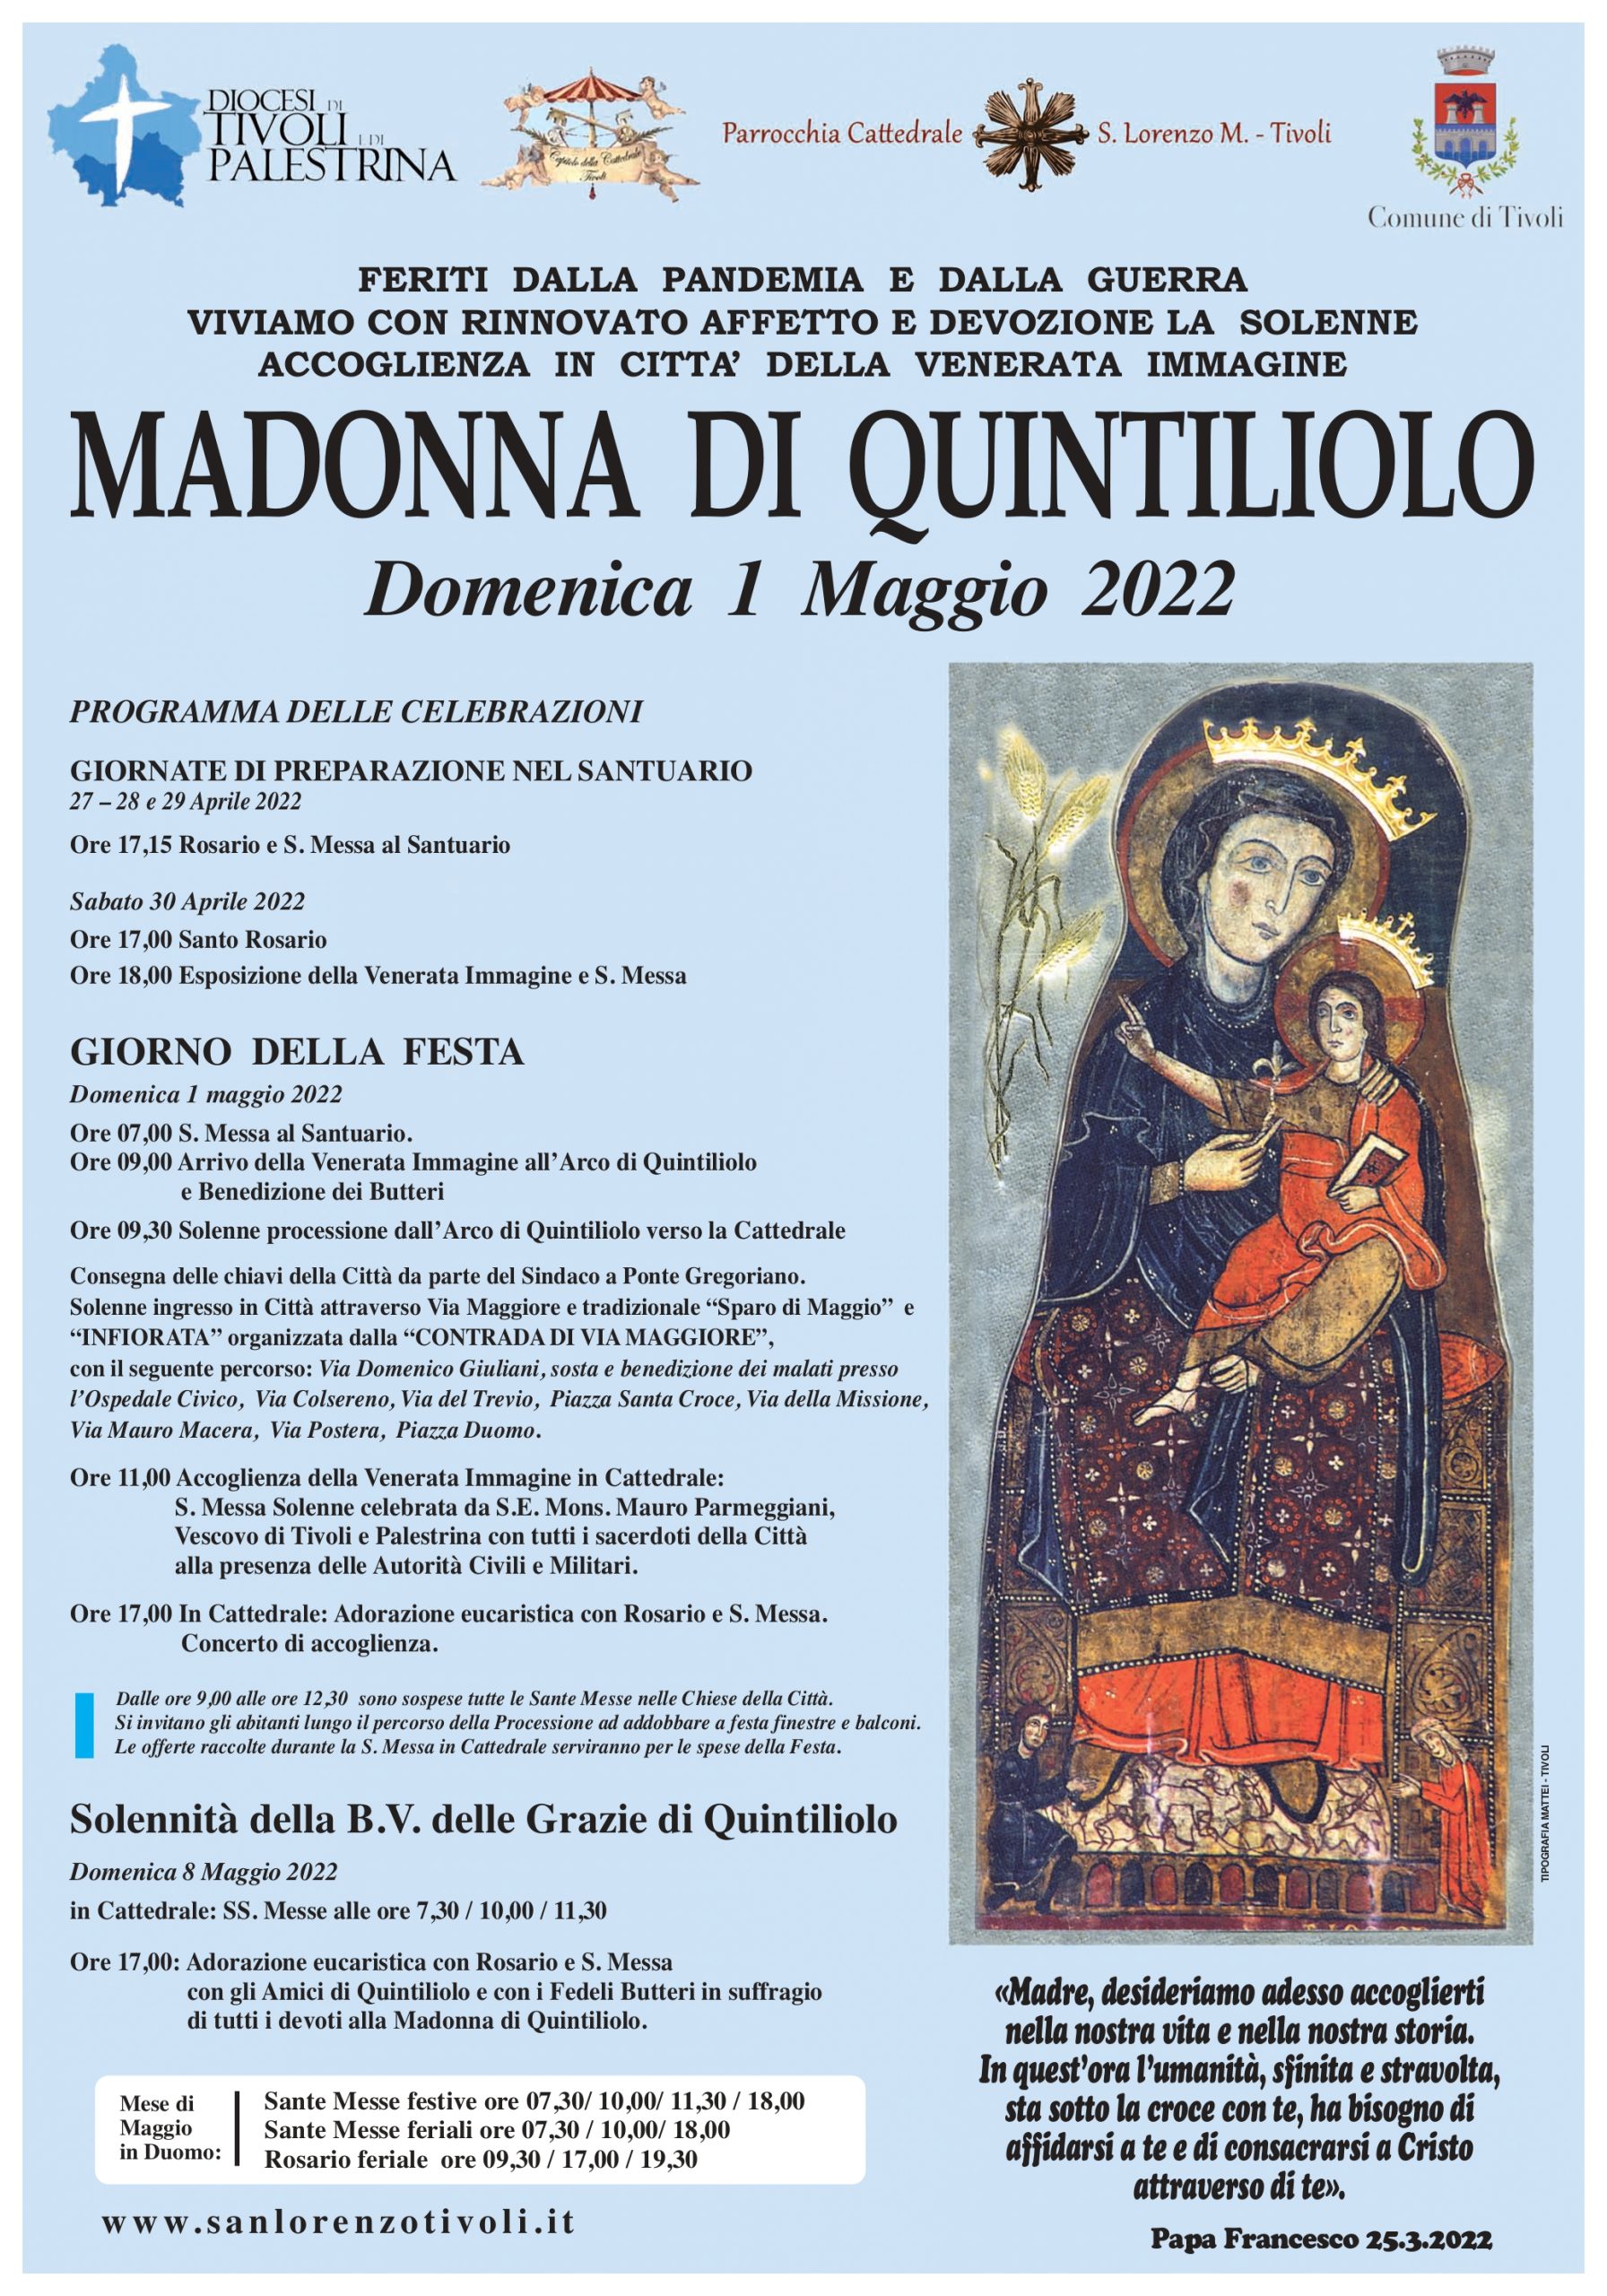 Festa della Madonna di Quintiliolo il 1° maggio 2022. Torna la storica processione